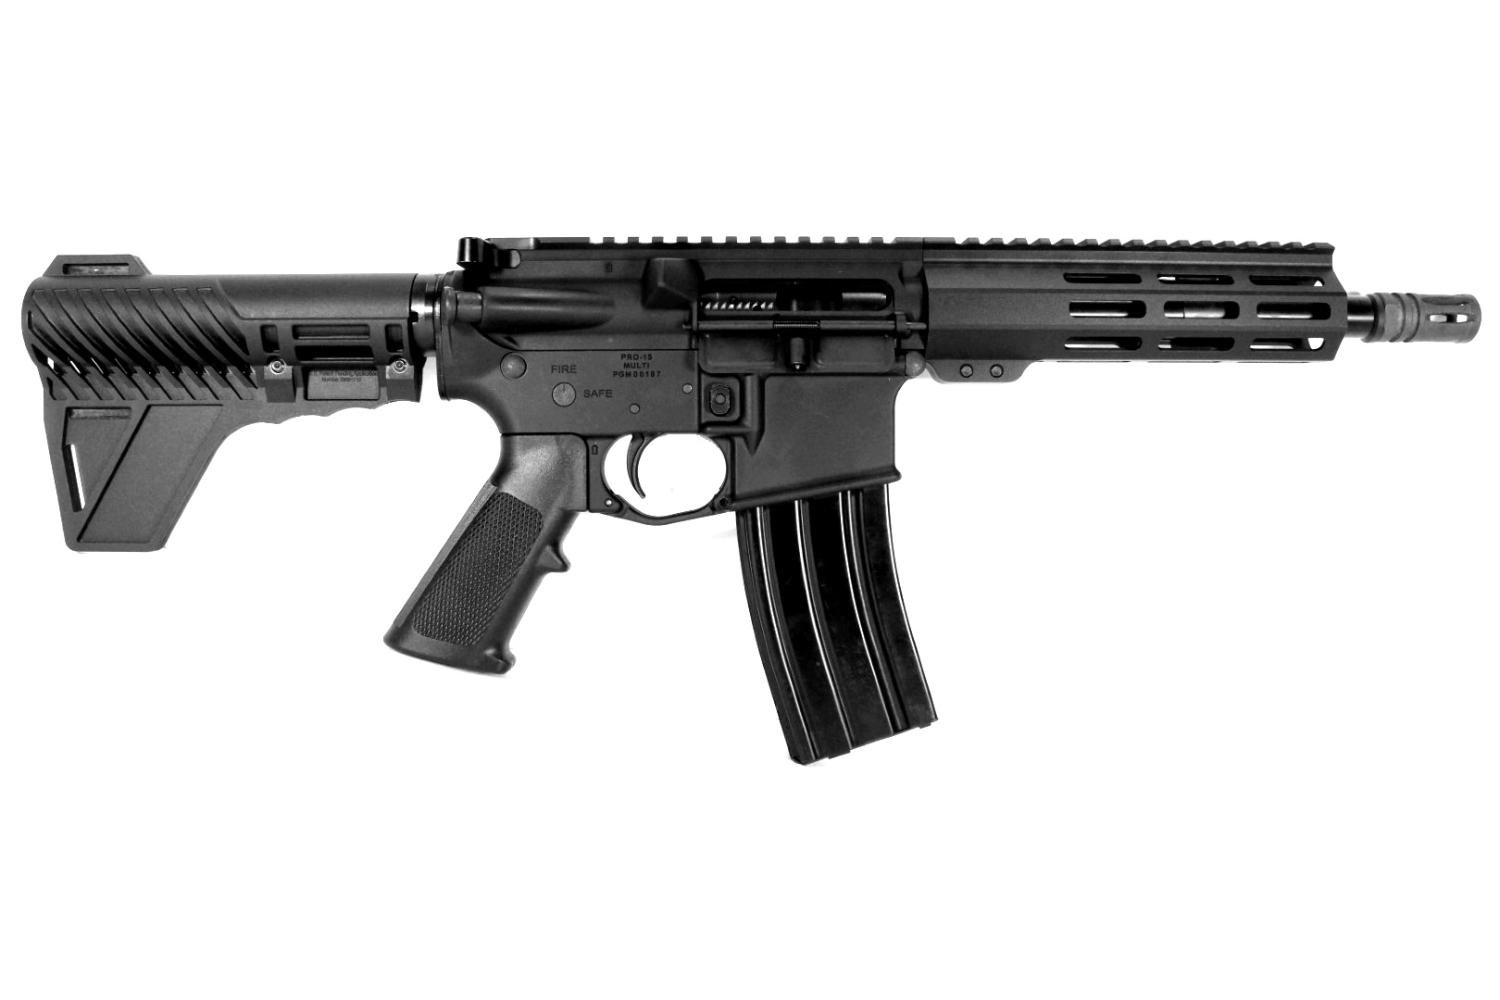 PATRIOT 8.5 inch 458 Socom M-LOK AR-15 Pistol - $764.99 after 15% code